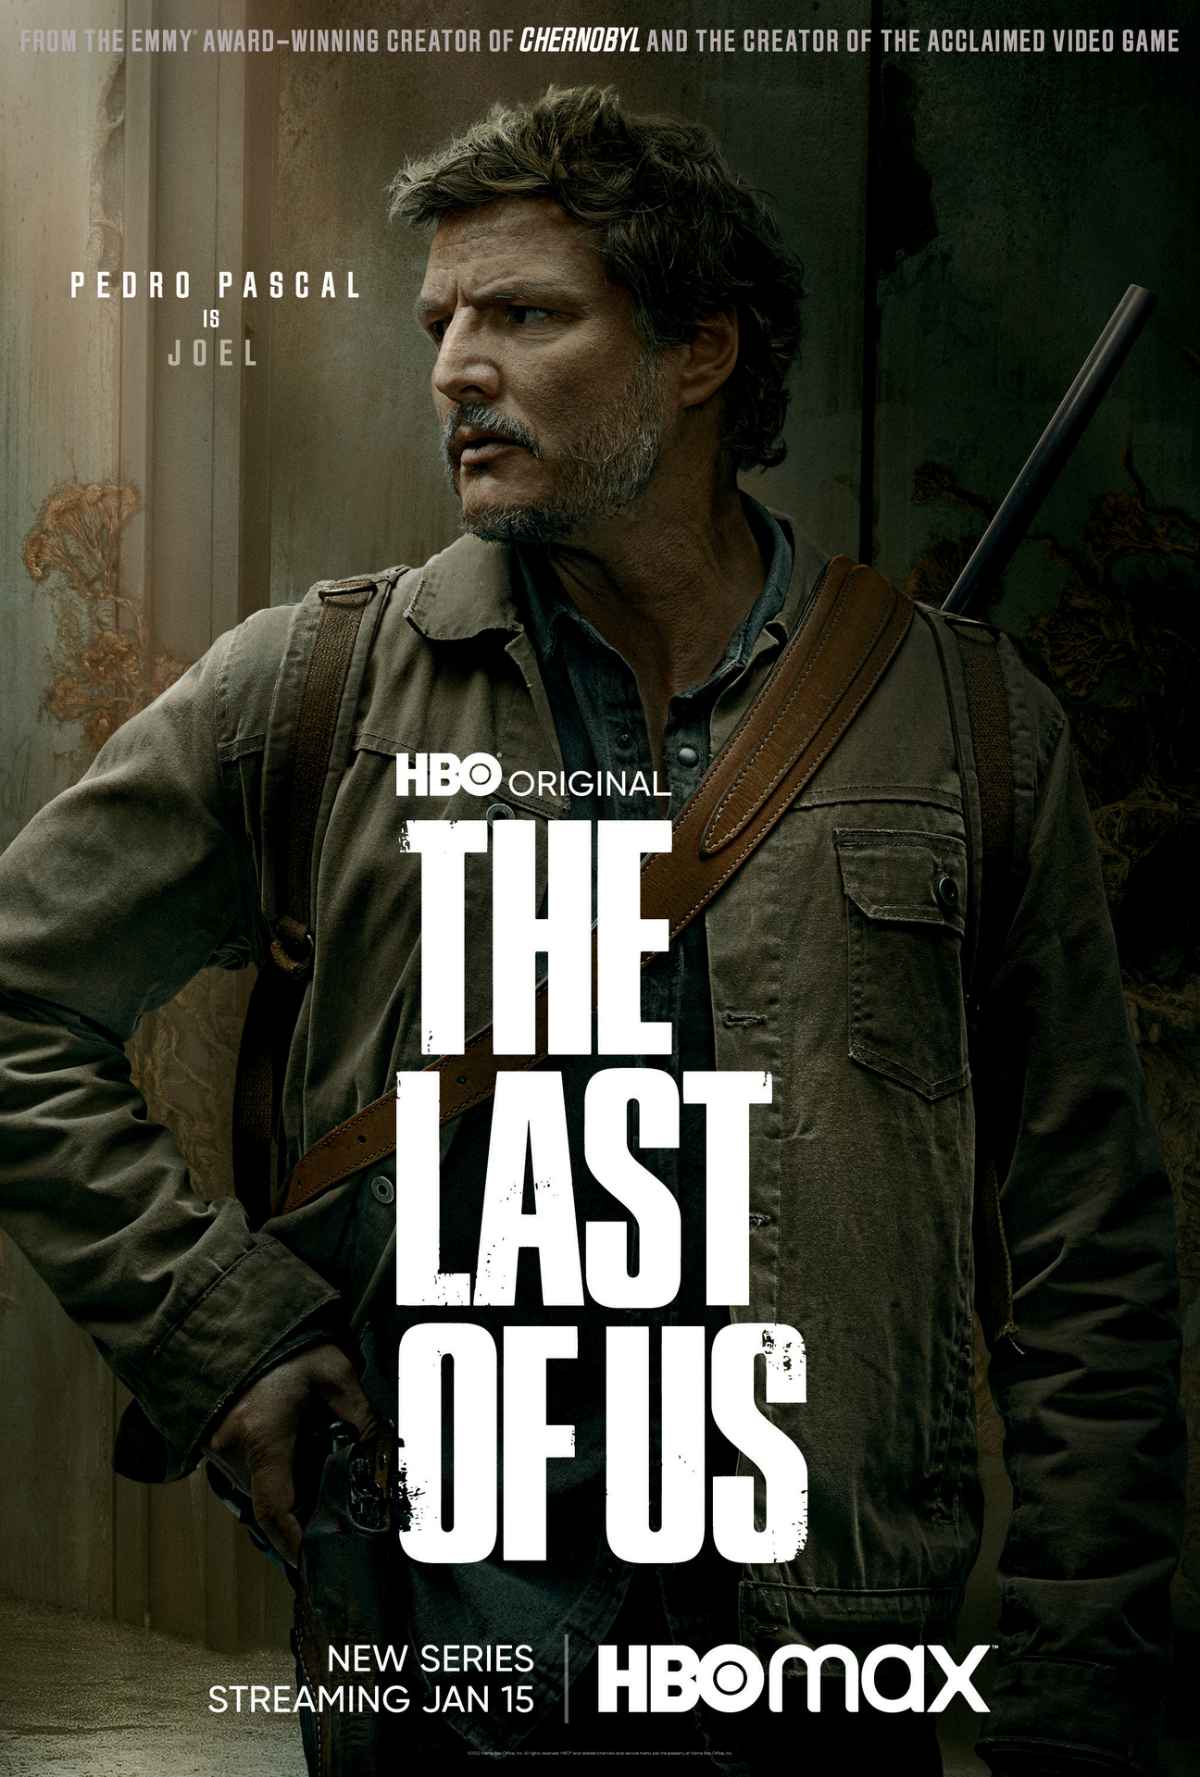 The Last of Us Series